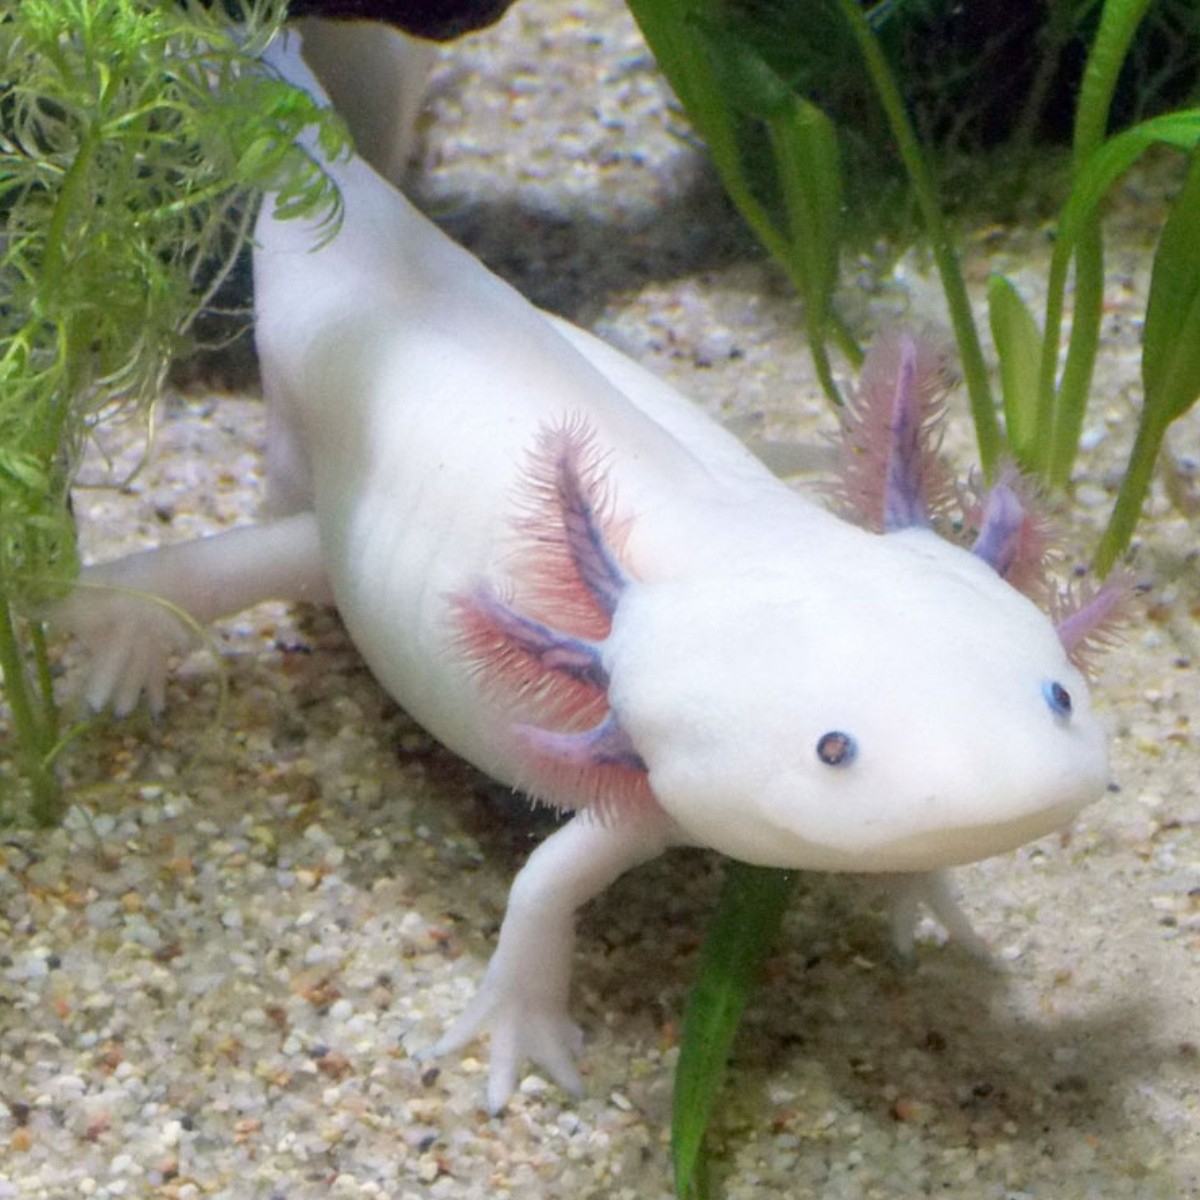 In danger of extinction the “Axolotl”